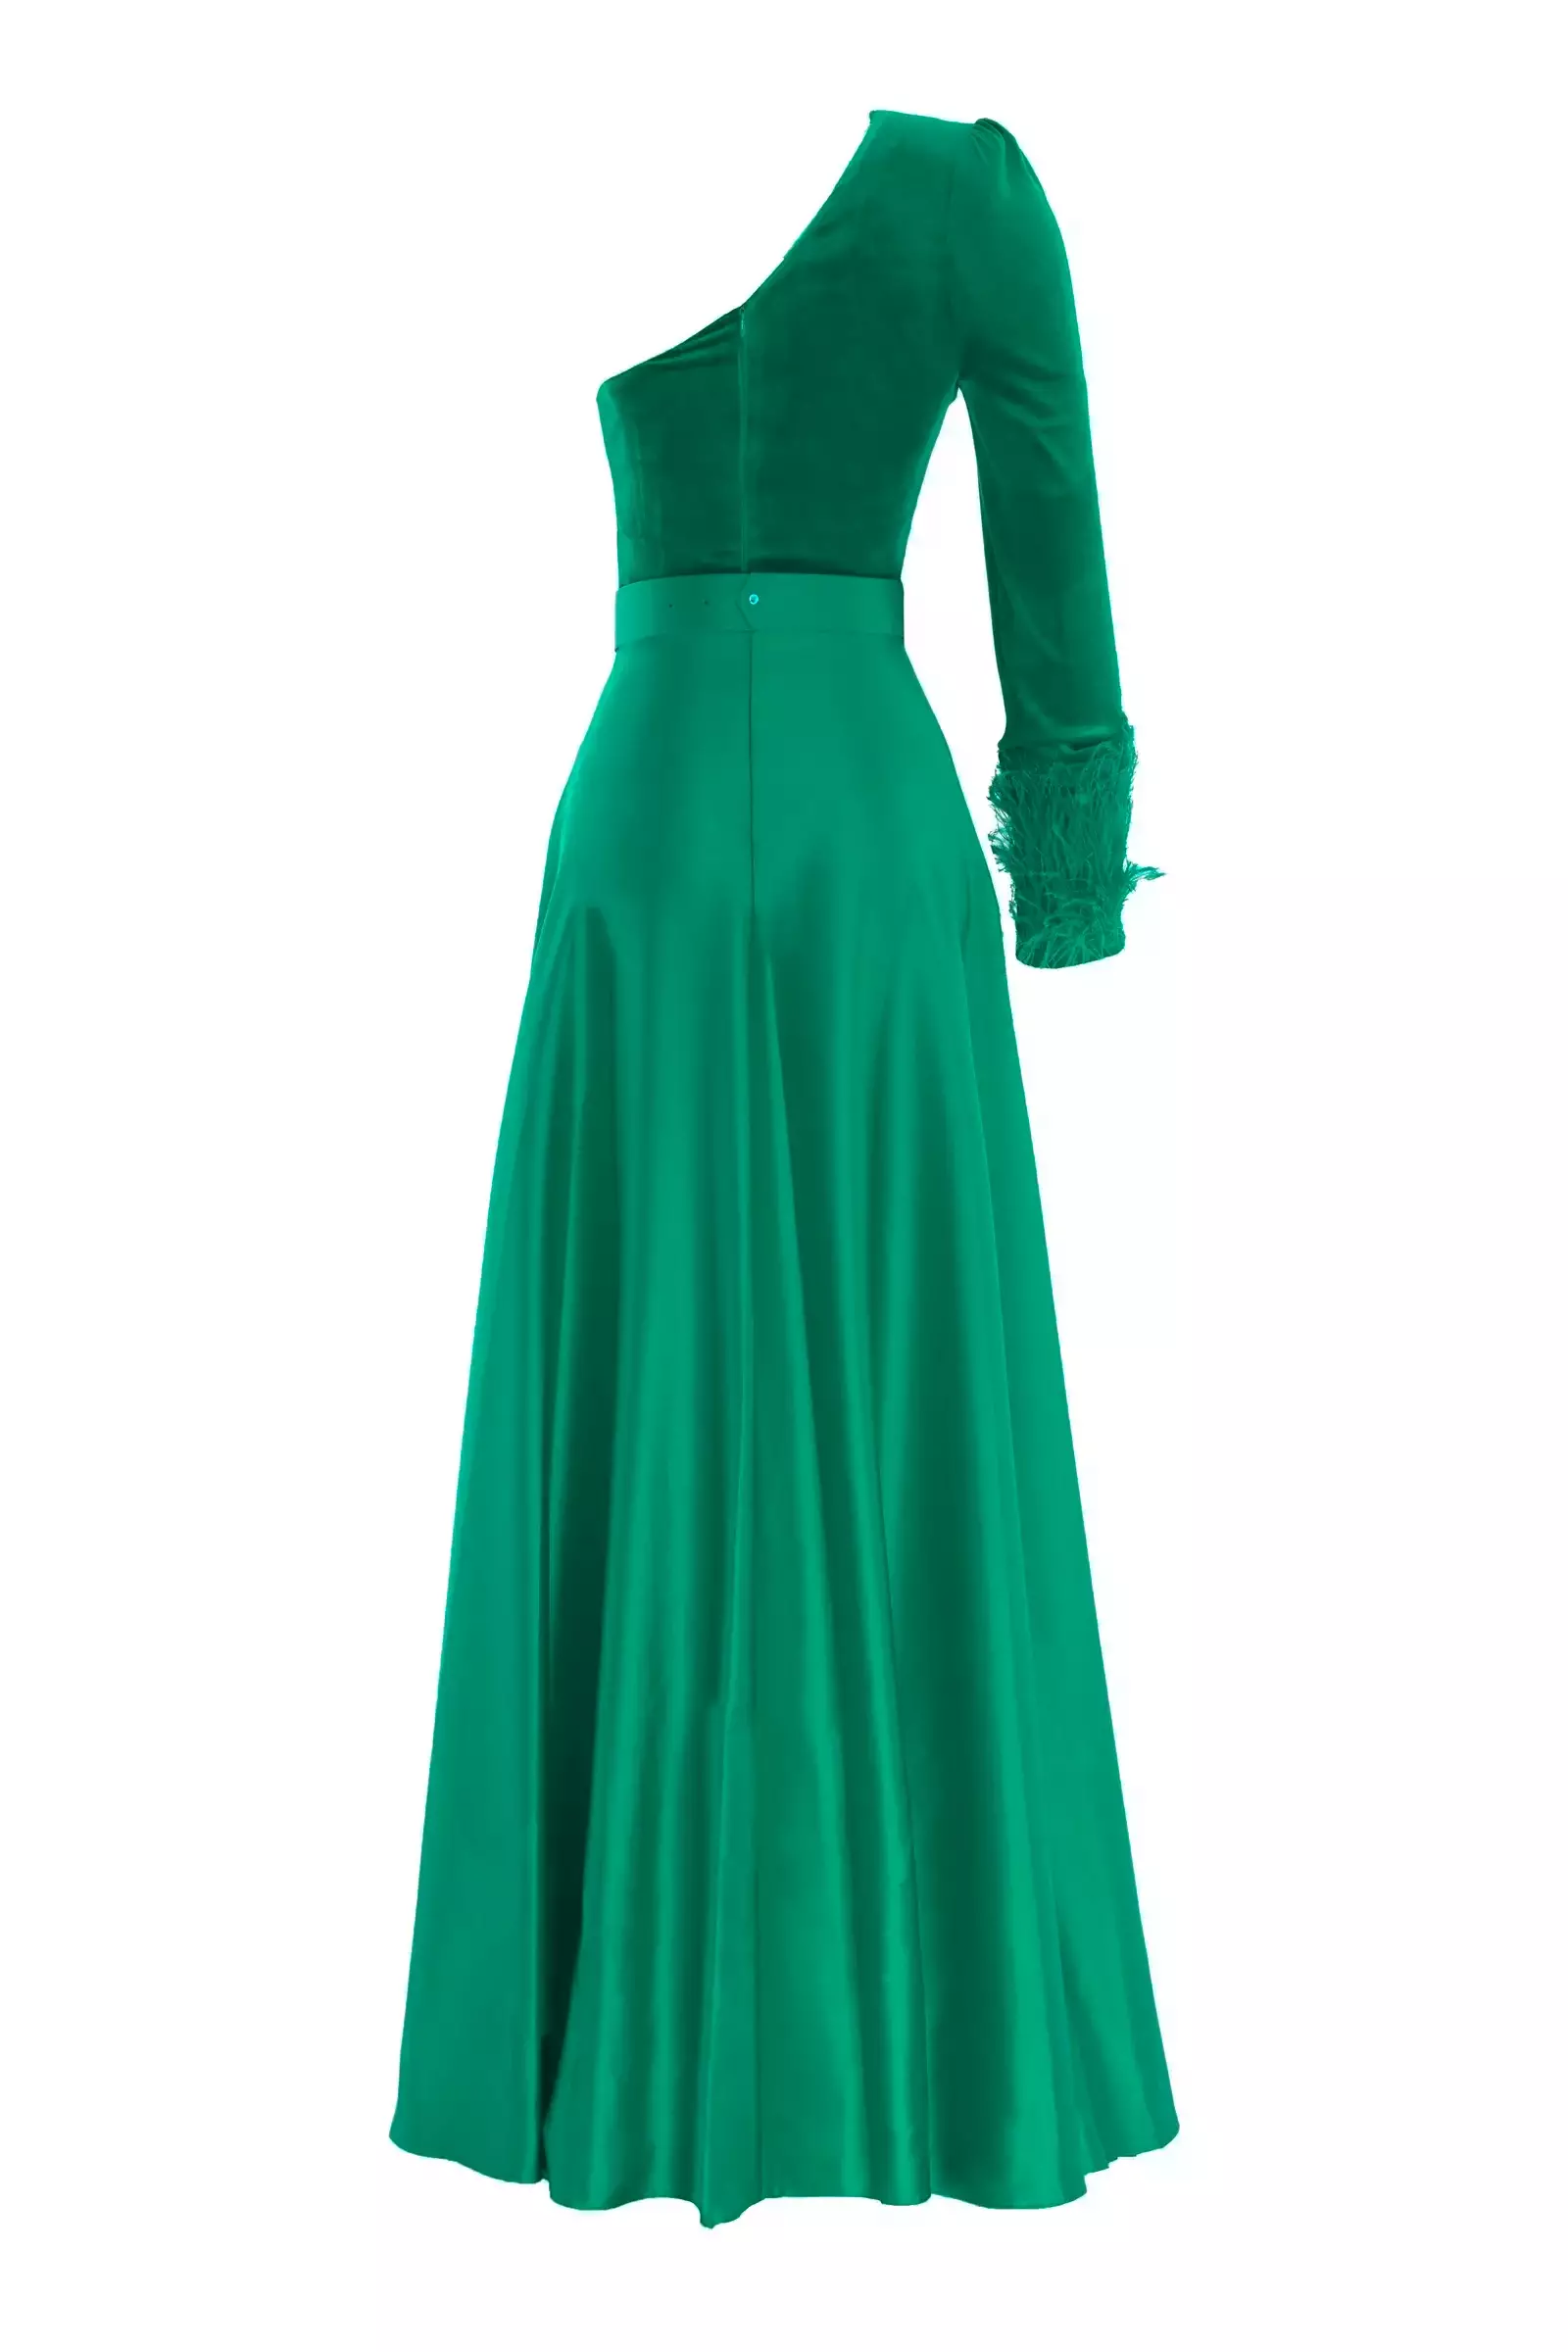 Green velvet one arm maxi dress